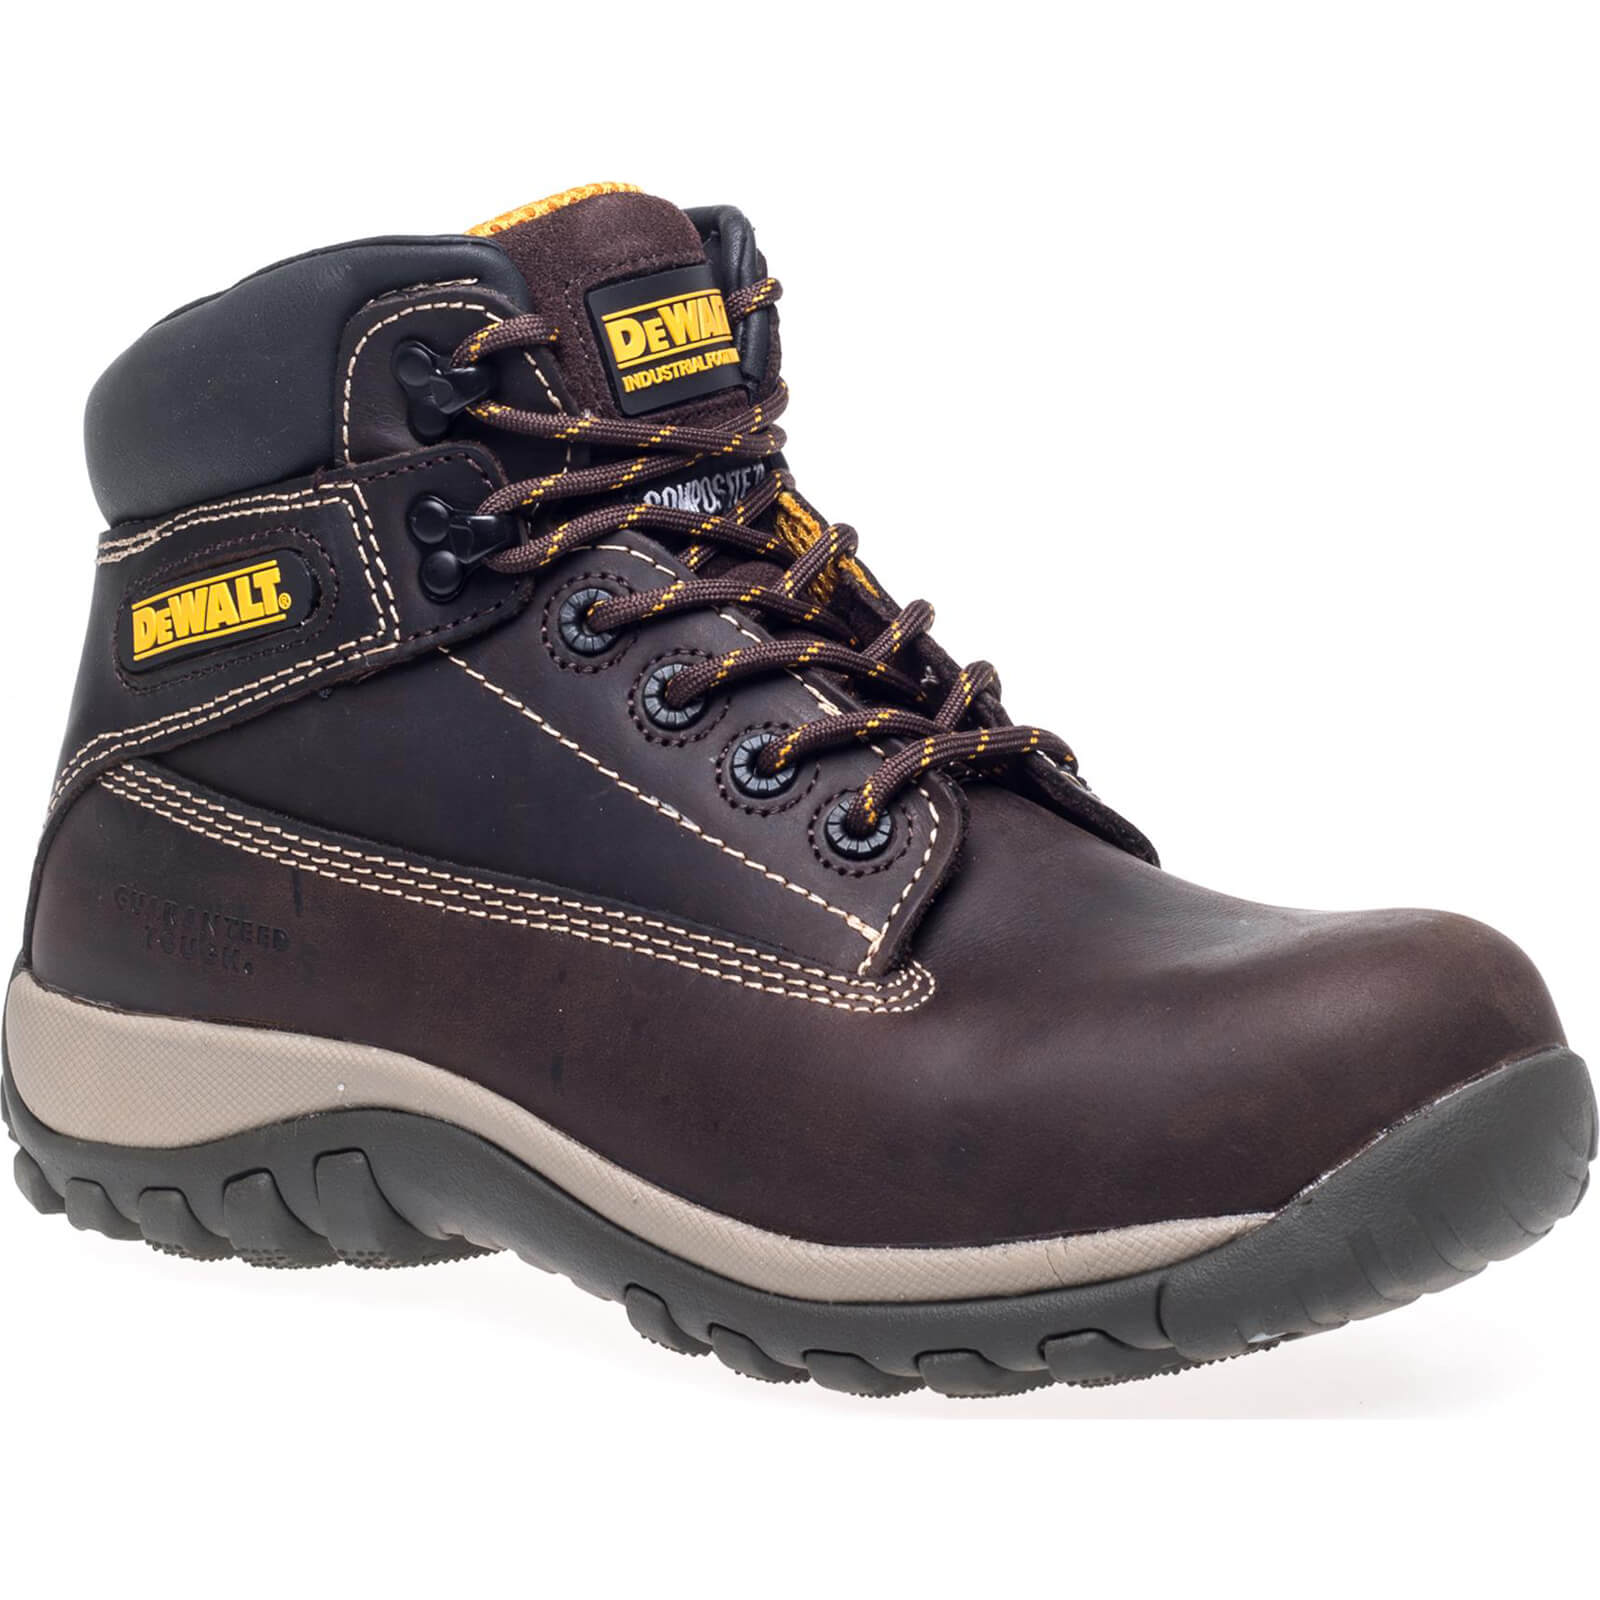 Photo of Dewalt Hammer Non Metallic Safety Boots Brown Size 6